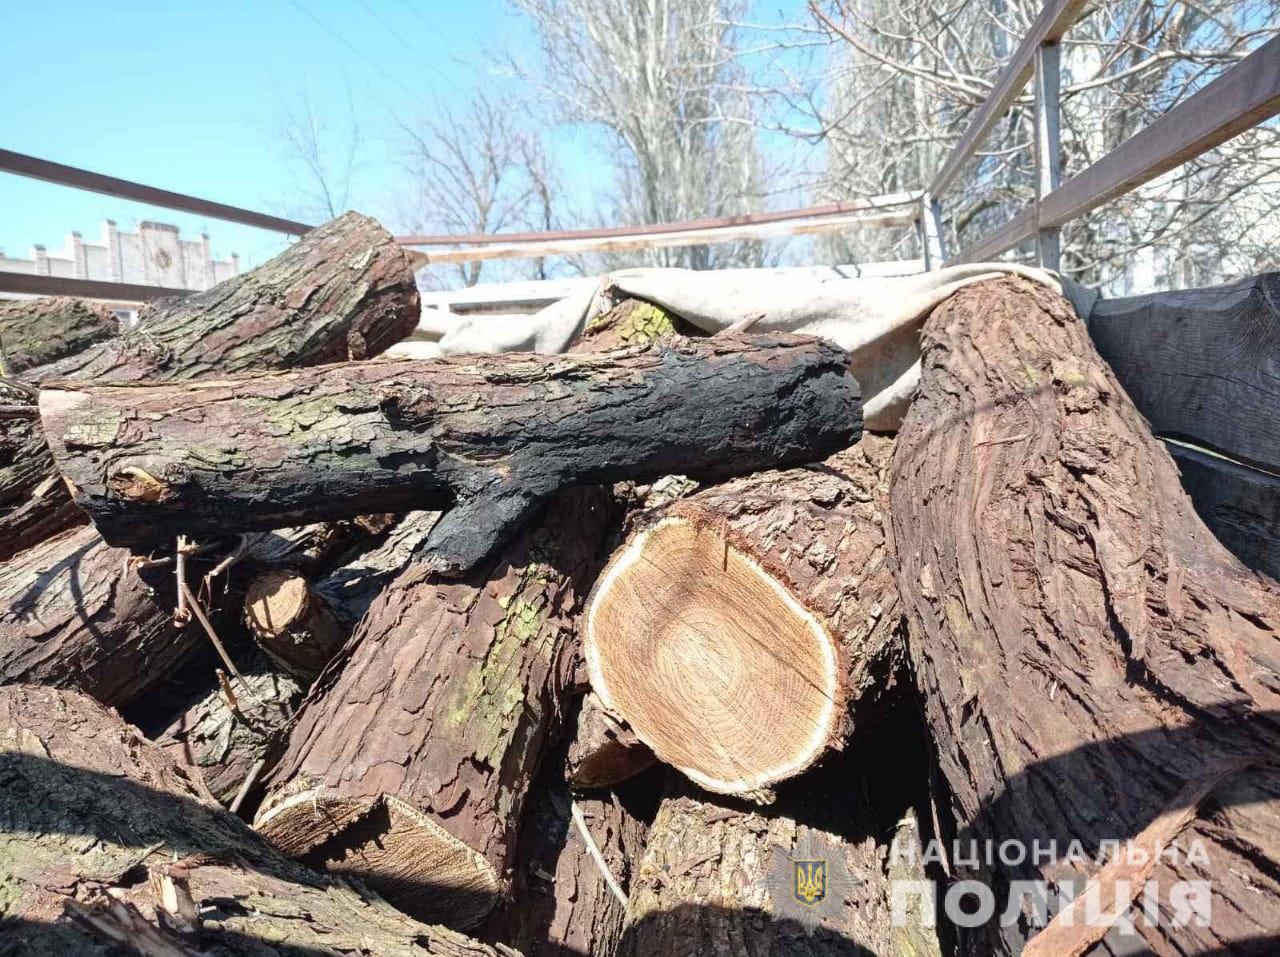 [:ru]В Марганце полиция разоблачила мужчин, которые незаконно рубили деревья[:ua]У Марганці поліція викрила чоловіків, які незаконно вирубували дерева[:]